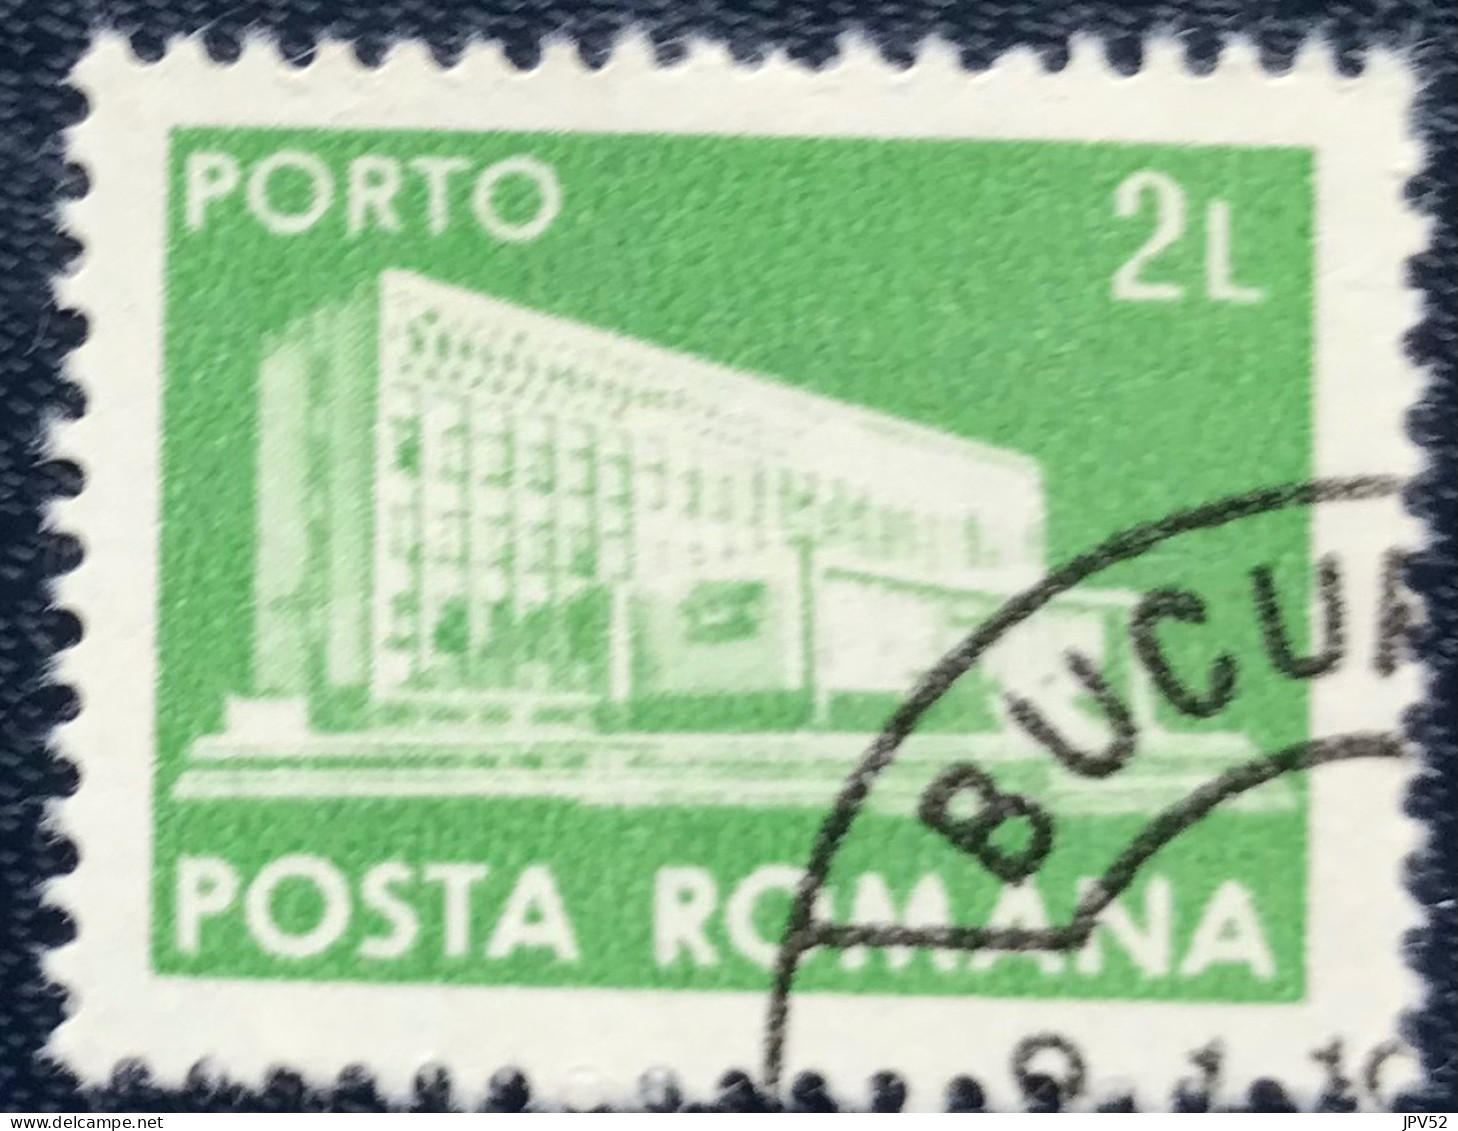 Romana - Roemenië - C14/53 - 1982 - (°)used - Michel 128 - Postkantoor - Postage Due